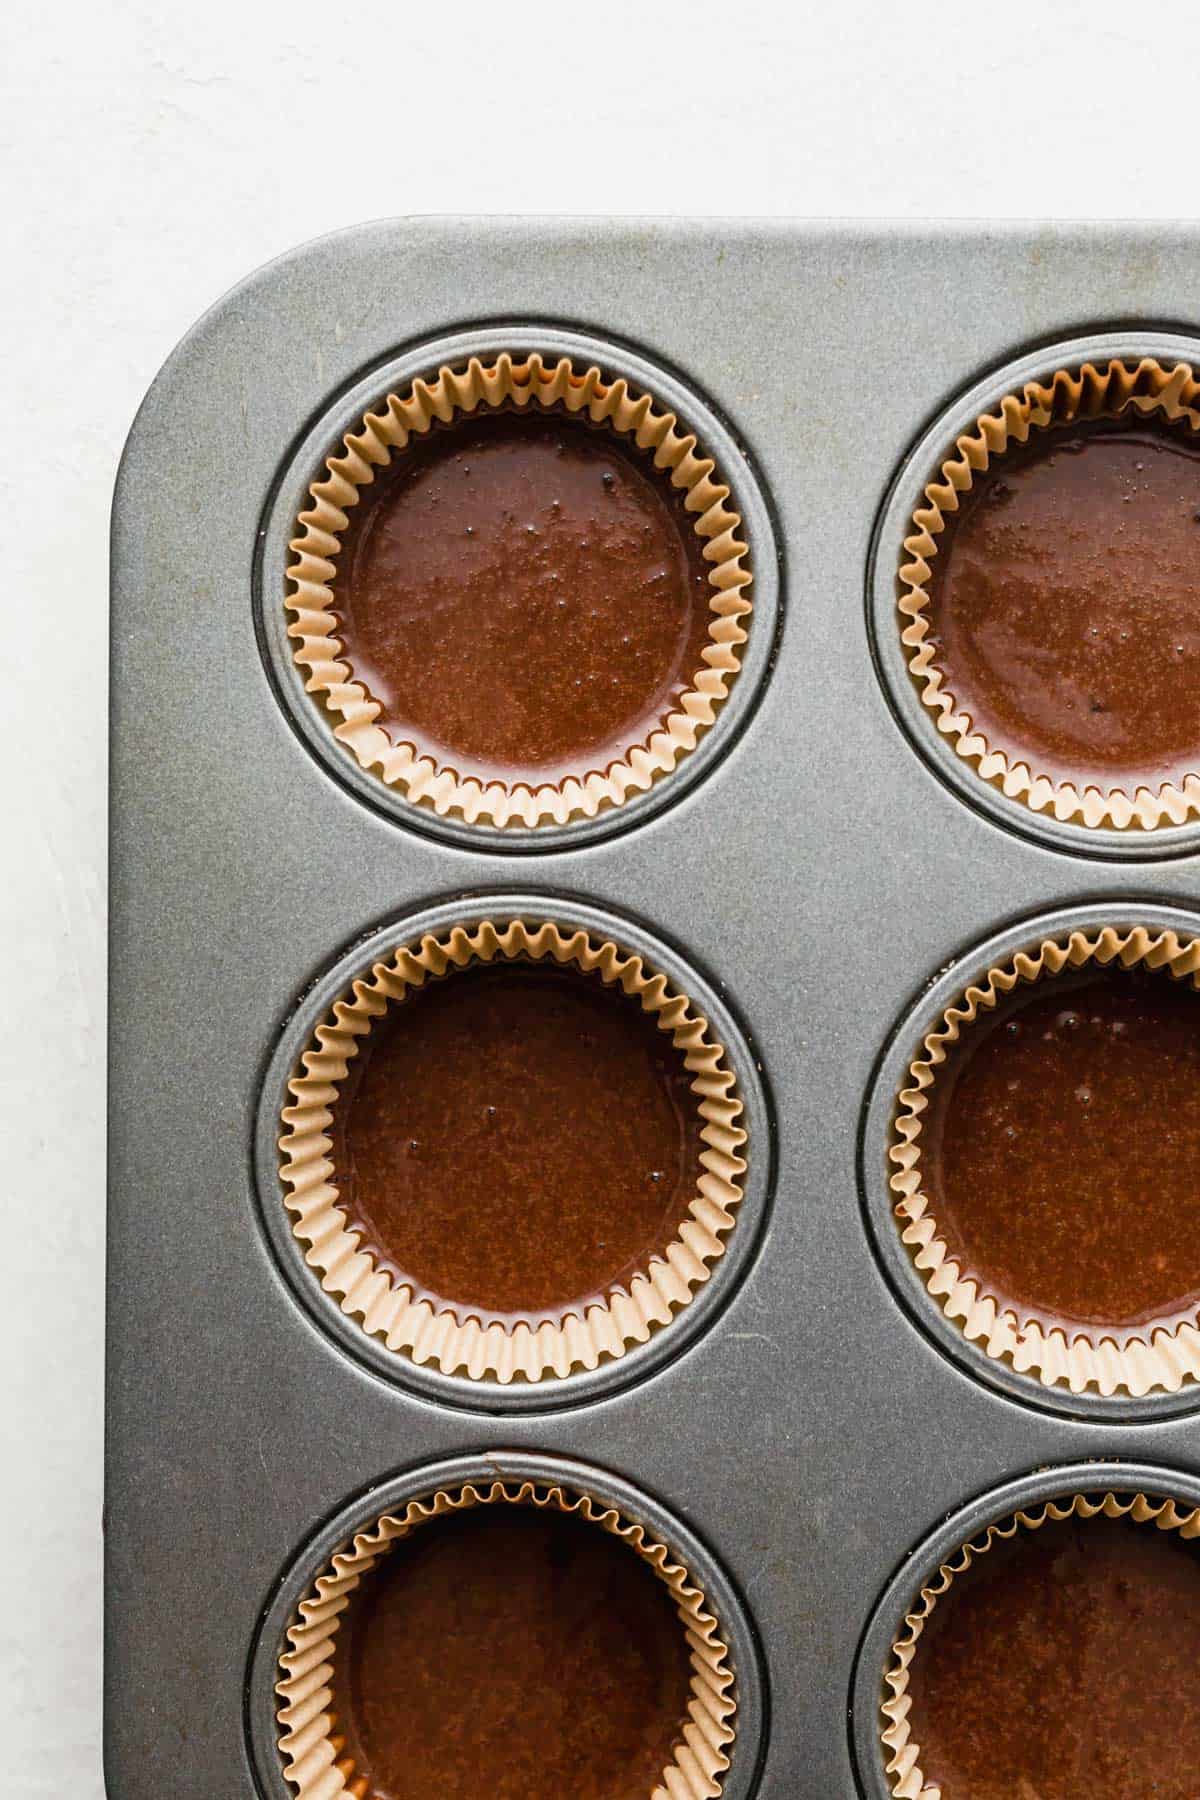 German Chocolate Cupcake batter in tan cupcake liners.